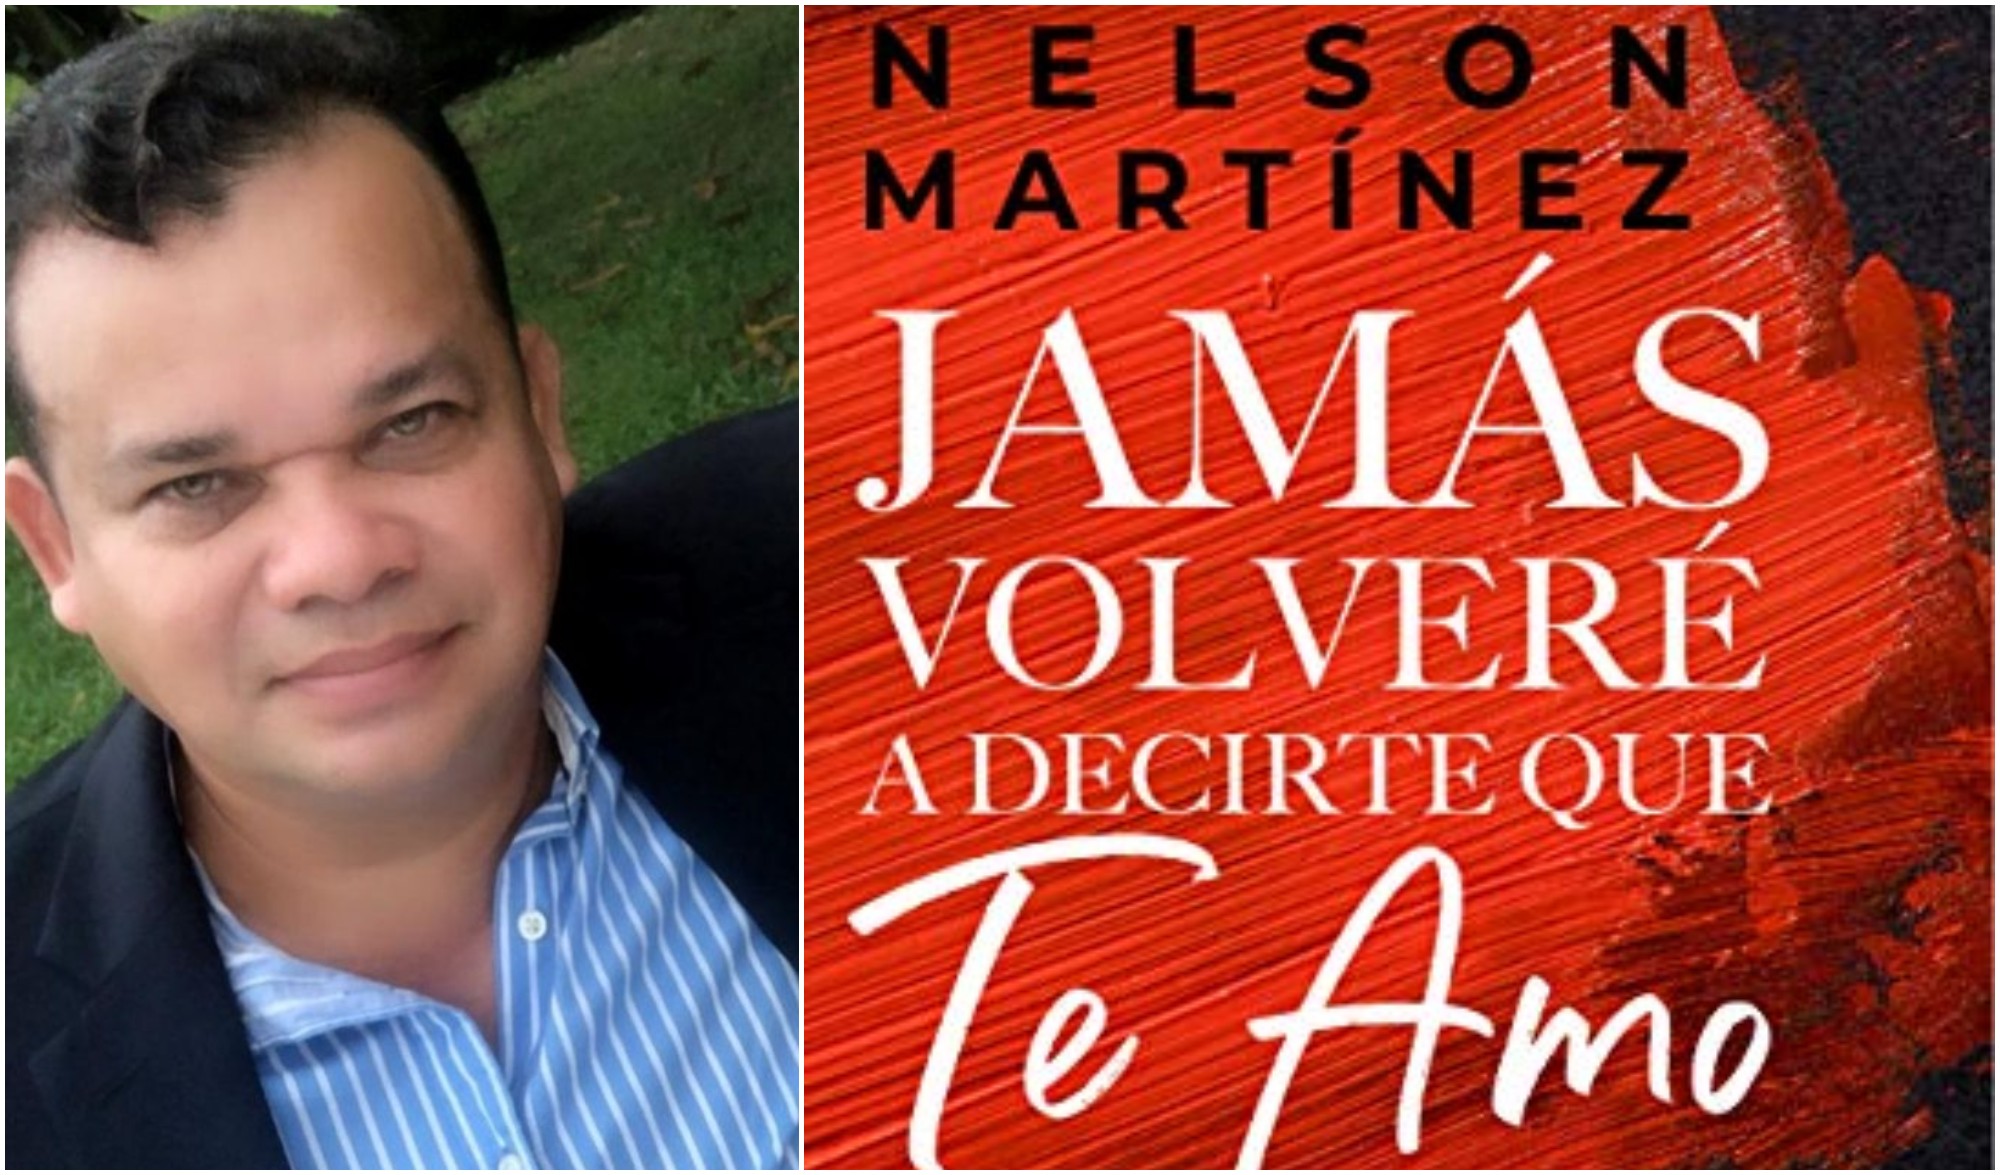 Libro del hondureño Nelson Martínez destaca en Amazon